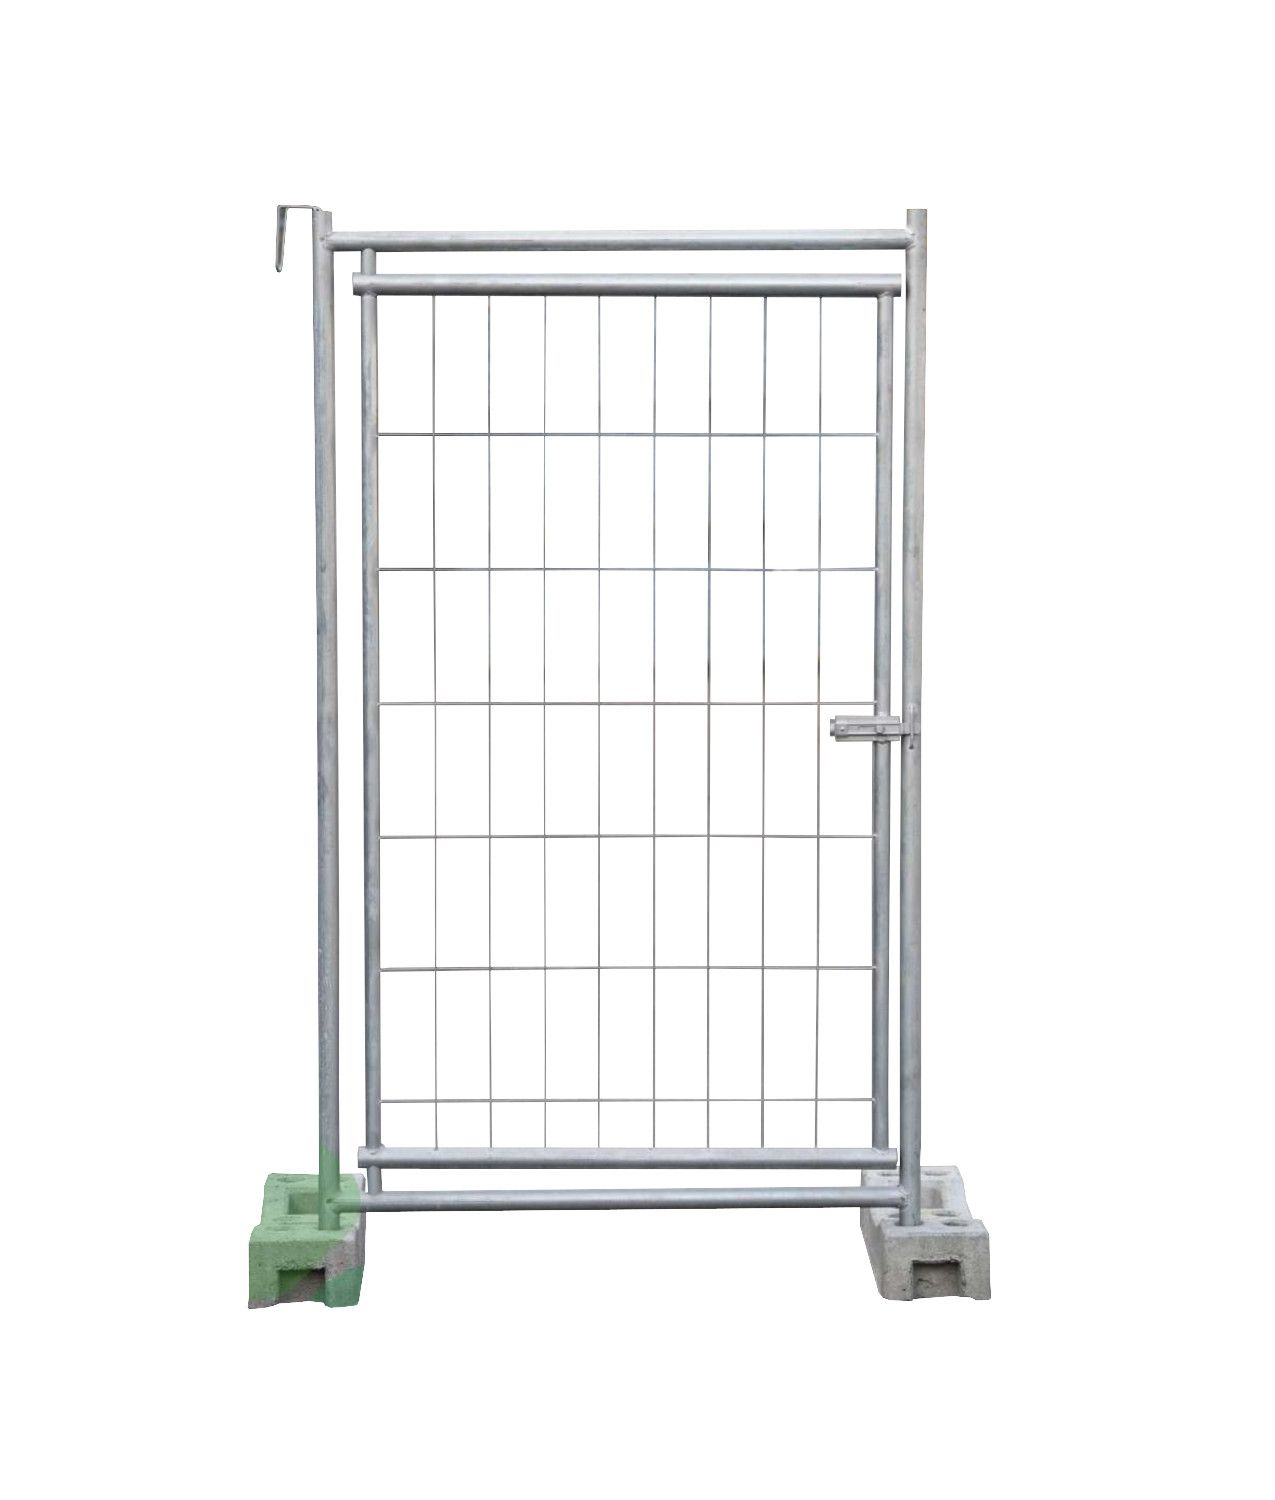 Pannello con porta inserita per recinzioni mobili Saf - CAN SAFRPRT